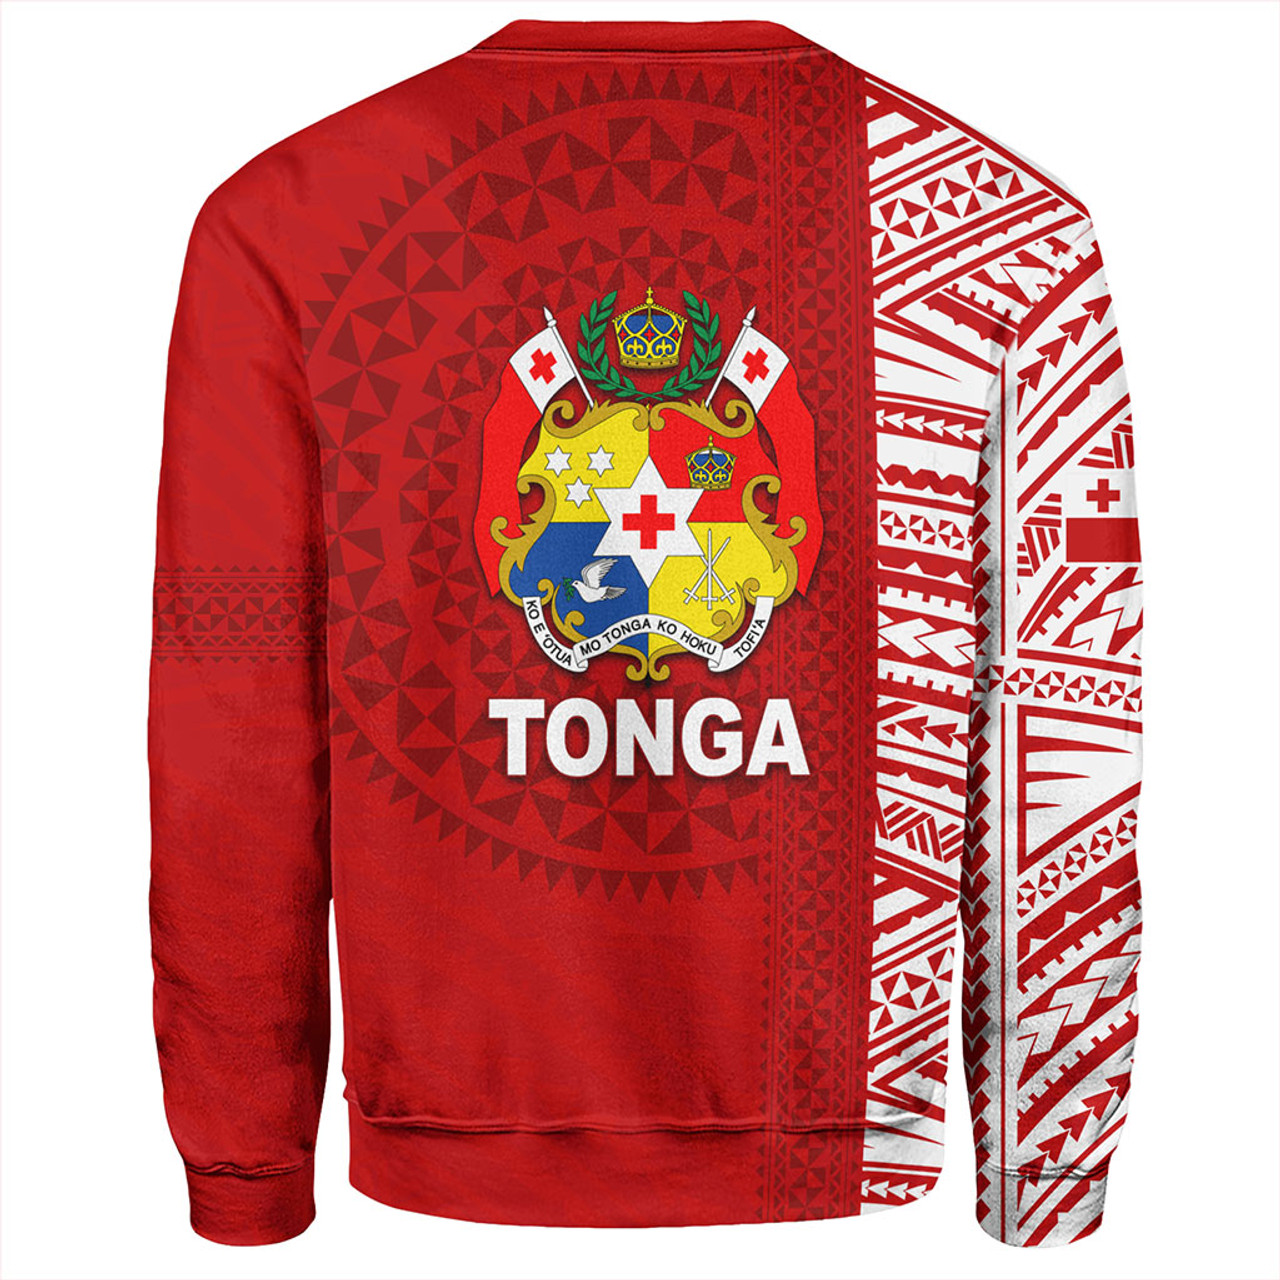 Tonga Sweatshirt Newest Style